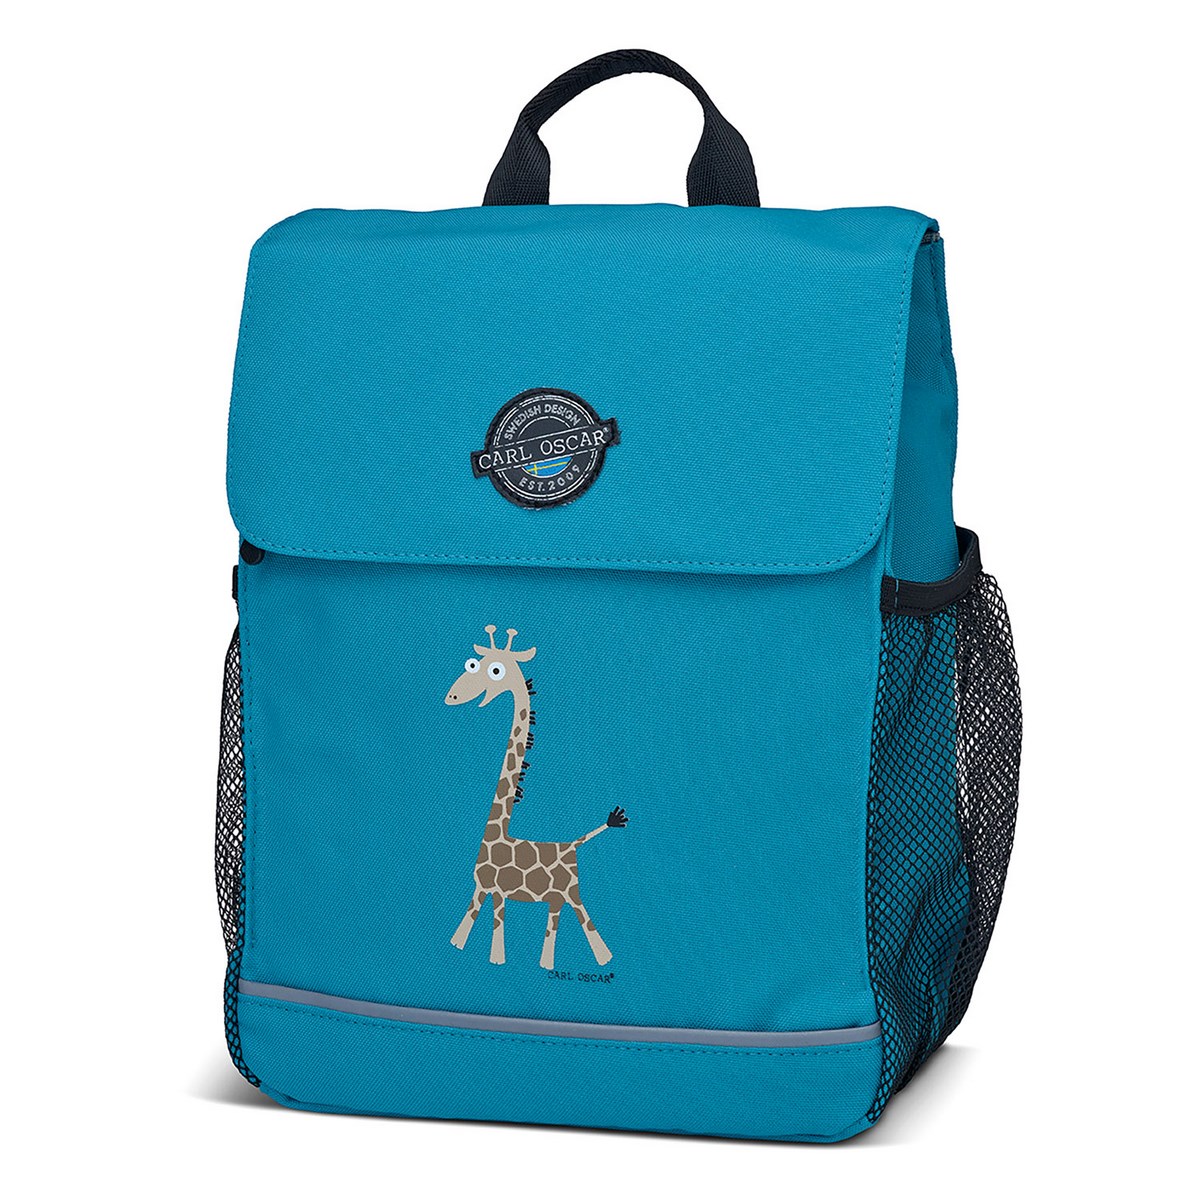   Pack n' Snack Giraffe Turquoise, 2213 , 30 , , Carl Oscar, 